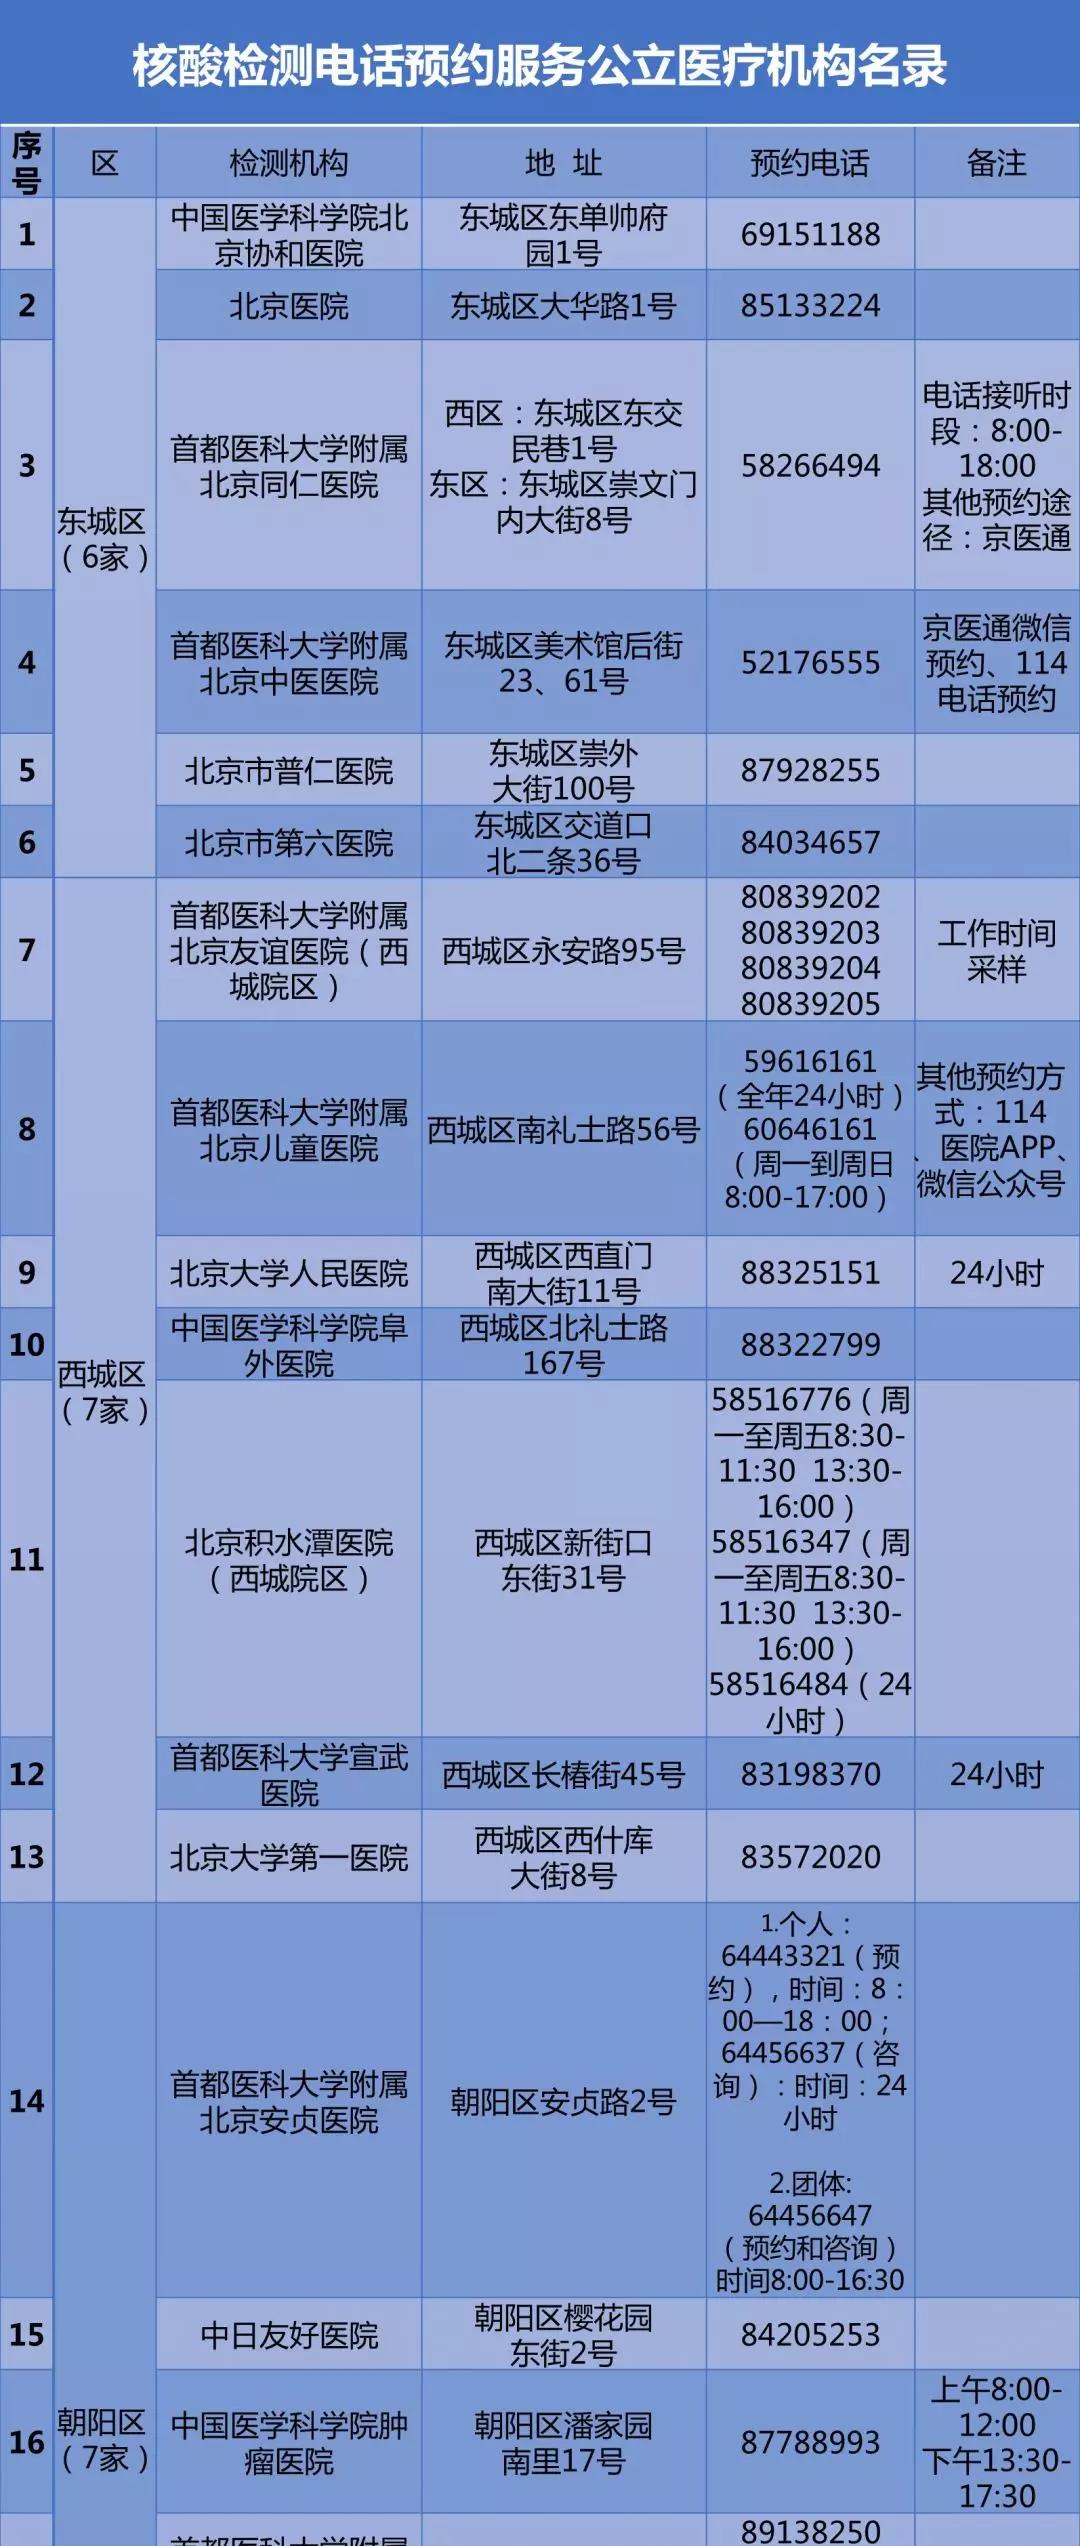 北京公布57家公立医疗机构核酸检测预约电话 